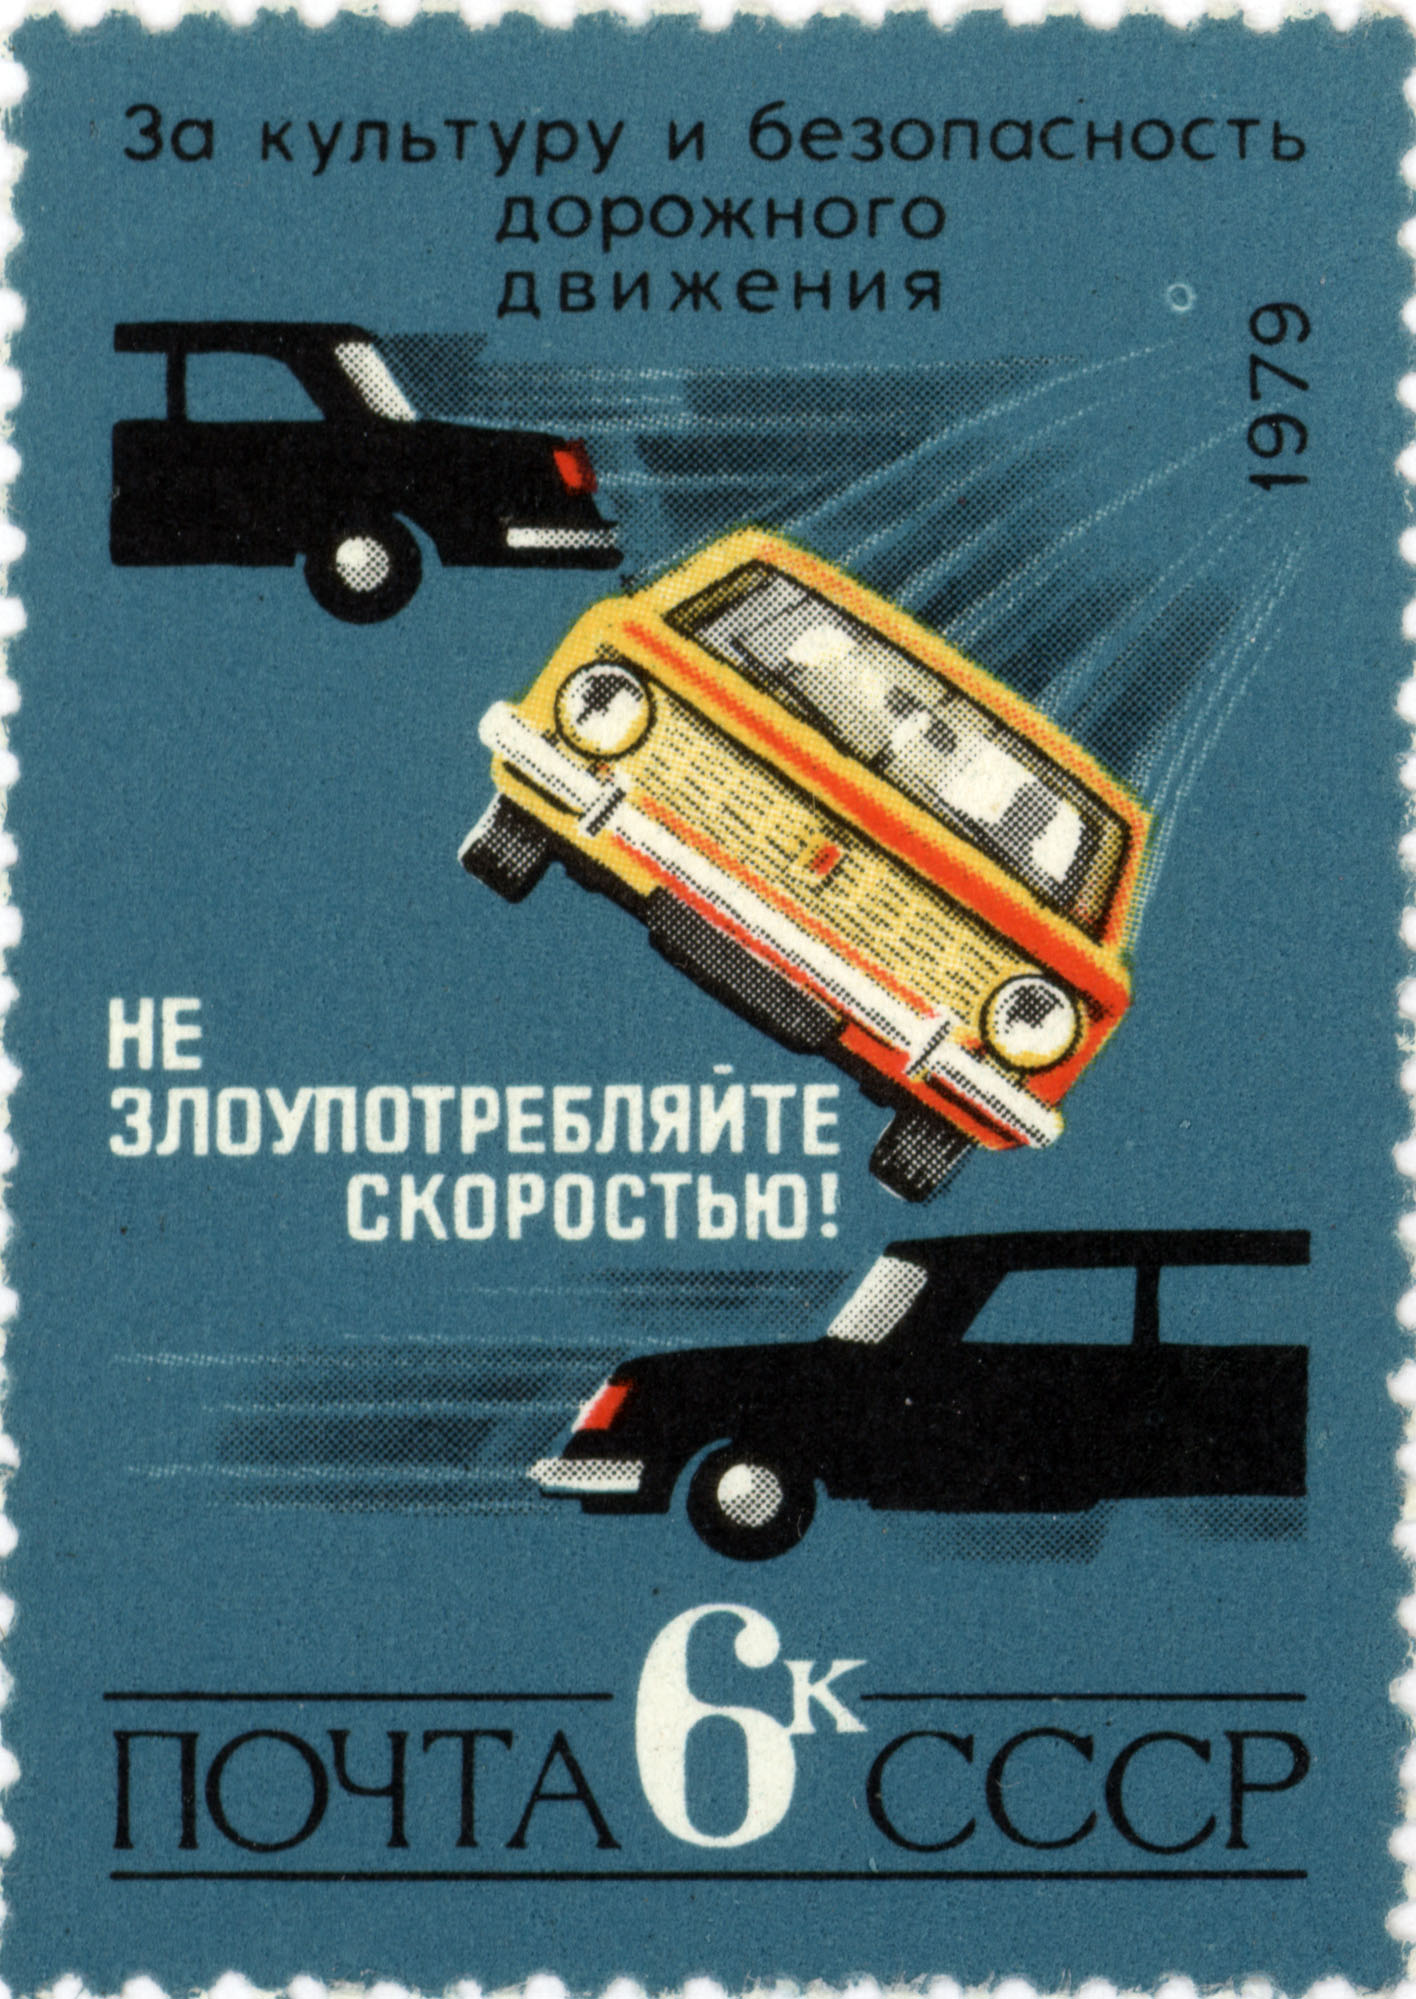 Road safety USSR postage stamp